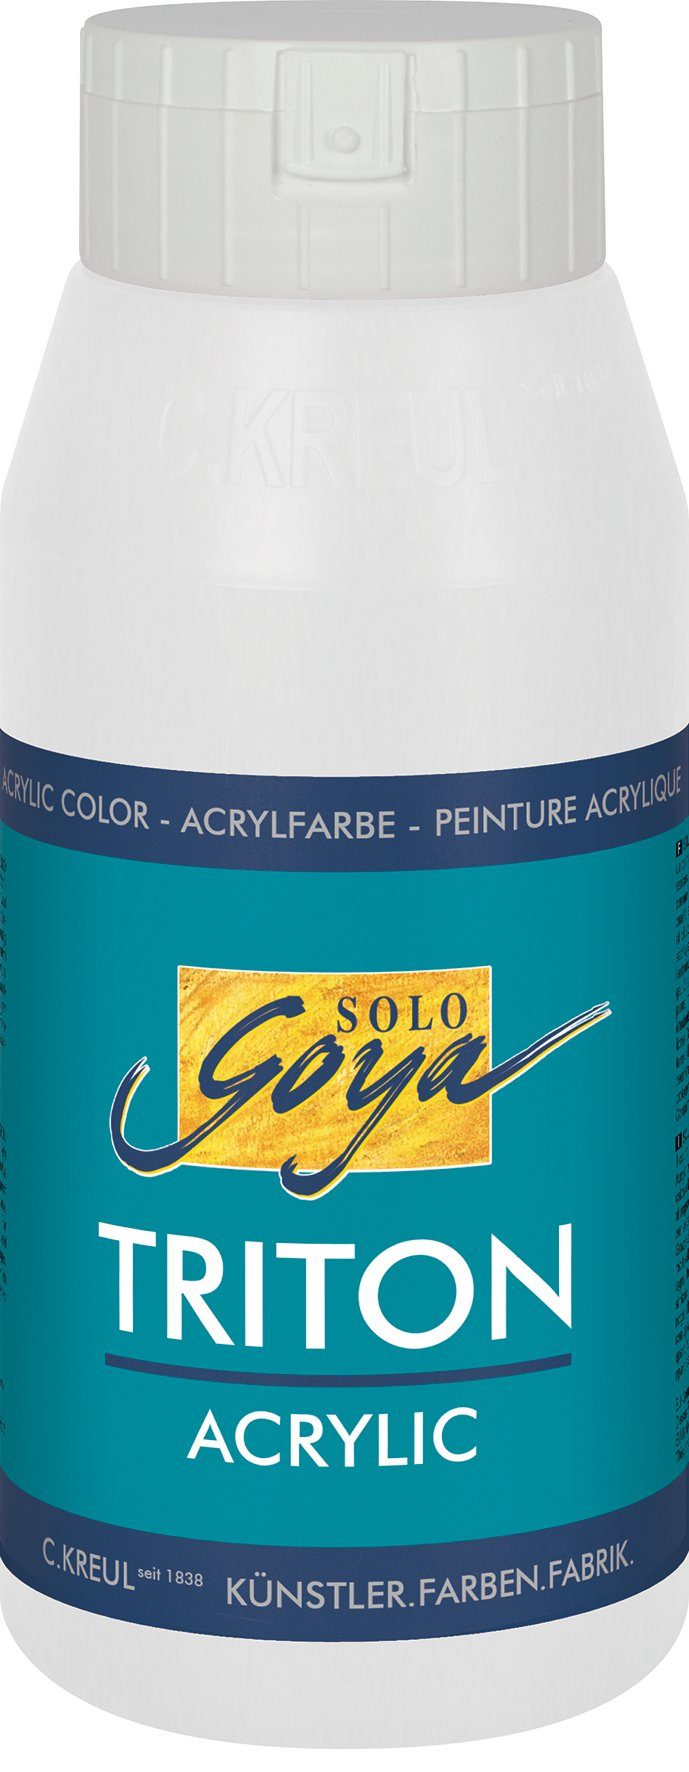 Kreul Acrylfarbe Solo Goya Triton Acrylic, 750 ml Weiß